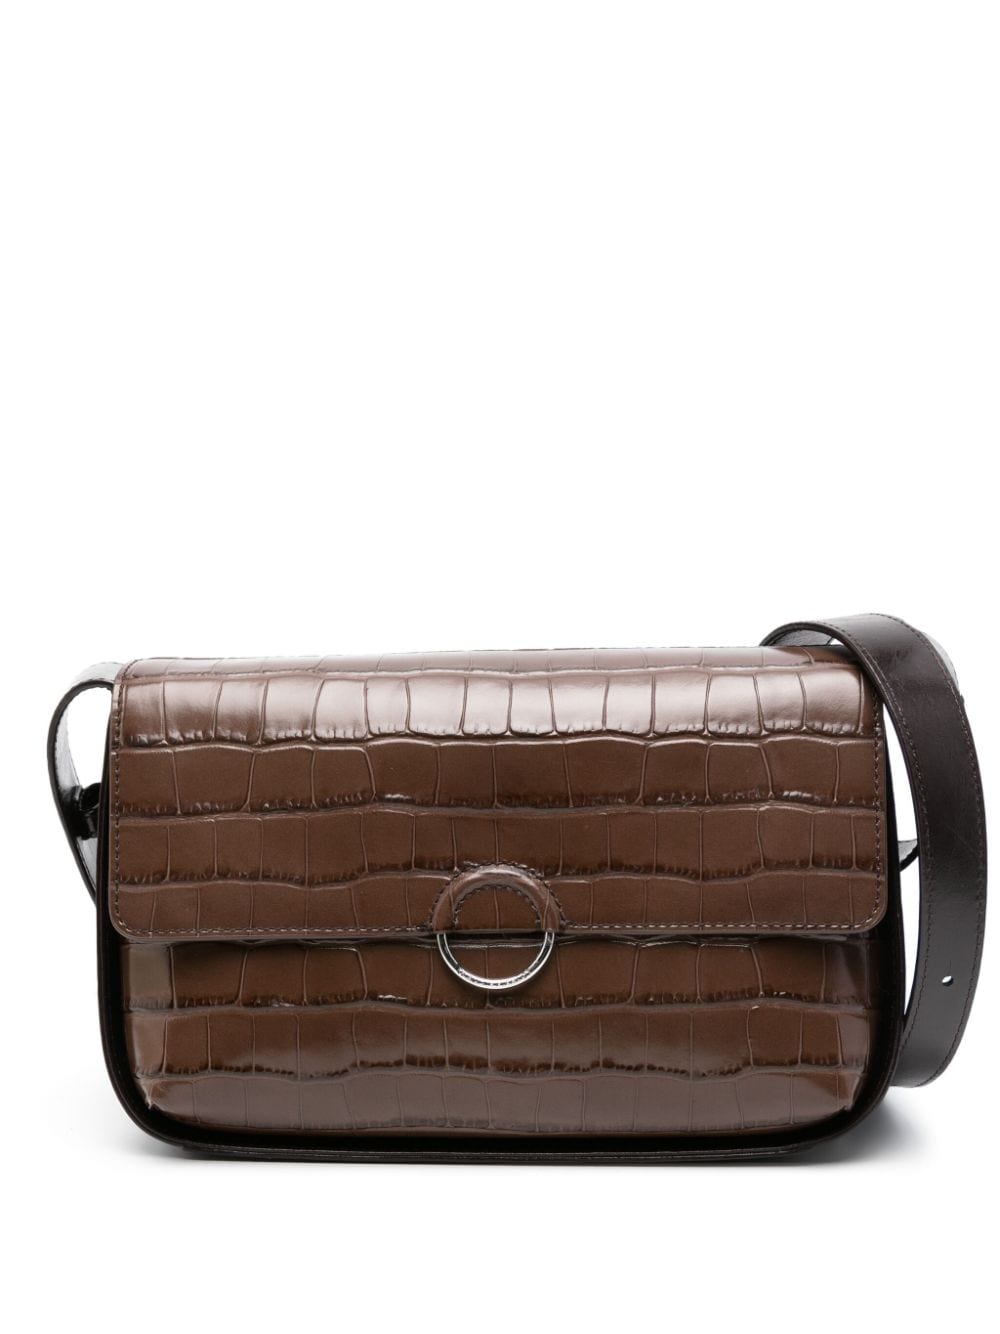 Claudie Pierlot Alix leather shoulder bag - Brown von Claudie Pierlot